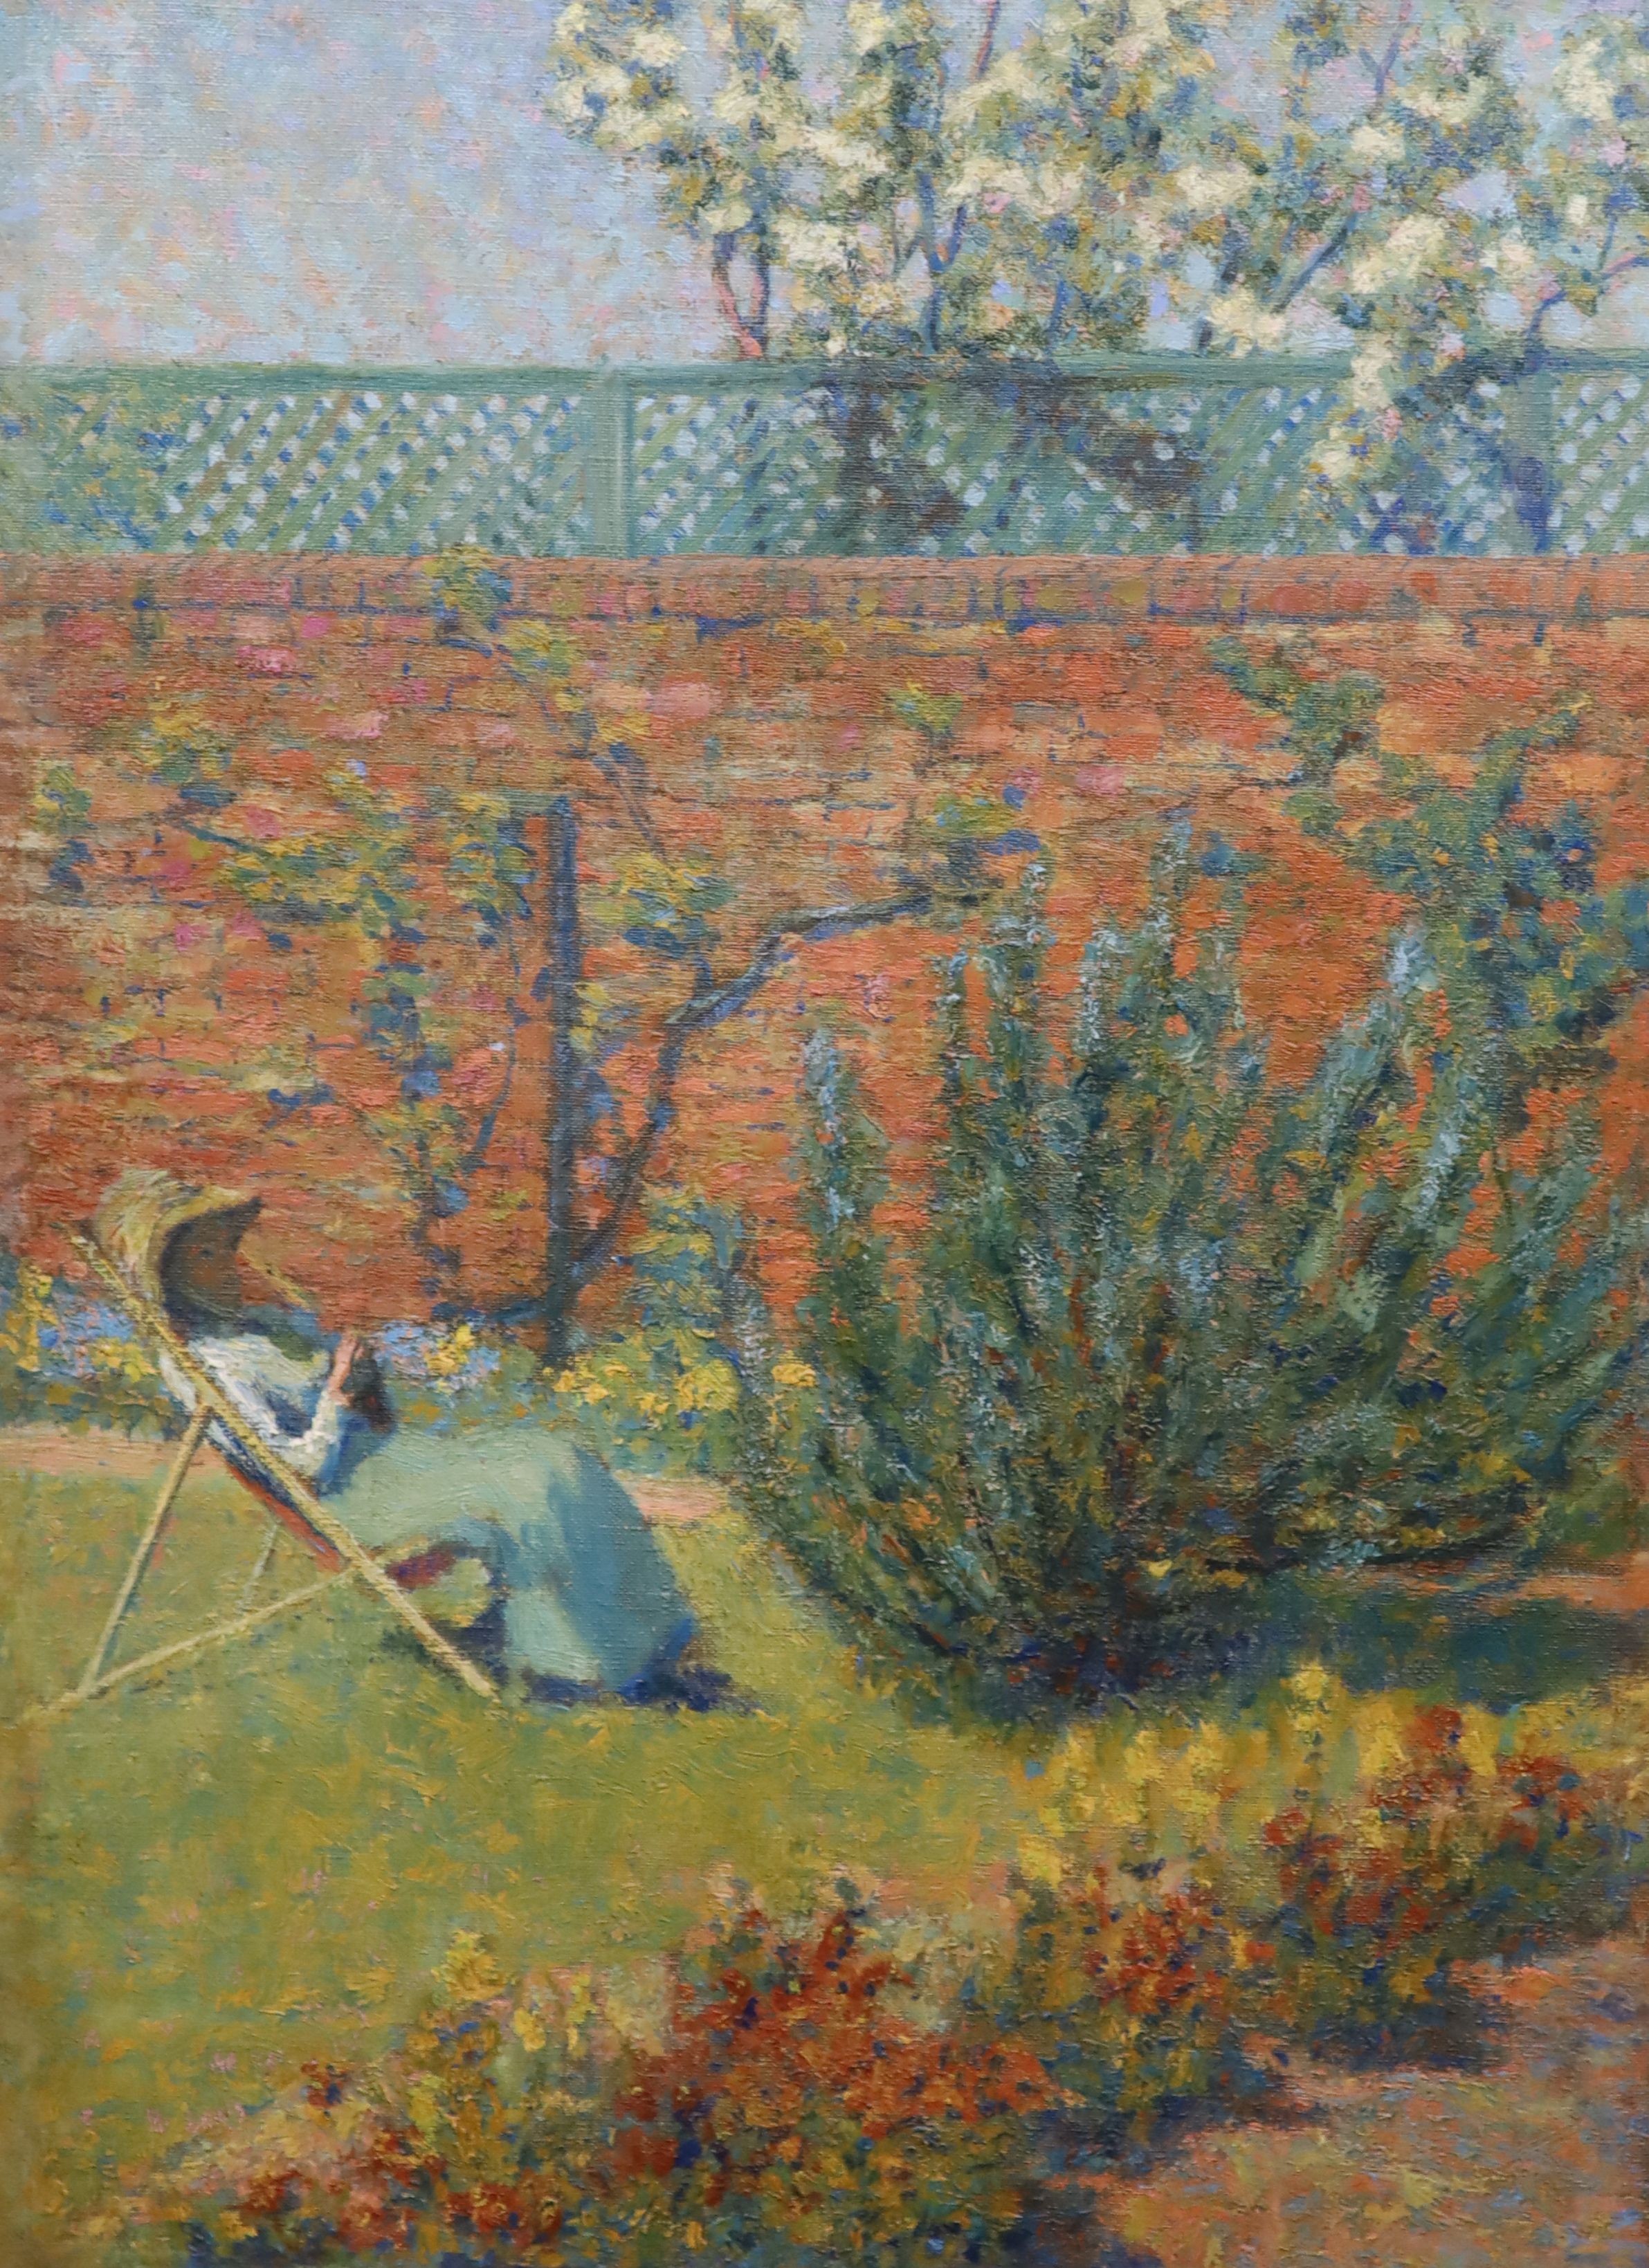 Thomas Buford Meteyard (American,1865-1928), Mrs Meteyard in Henry James's Garden, Rye, c.1910, oil on canvas, 58 x 41cm